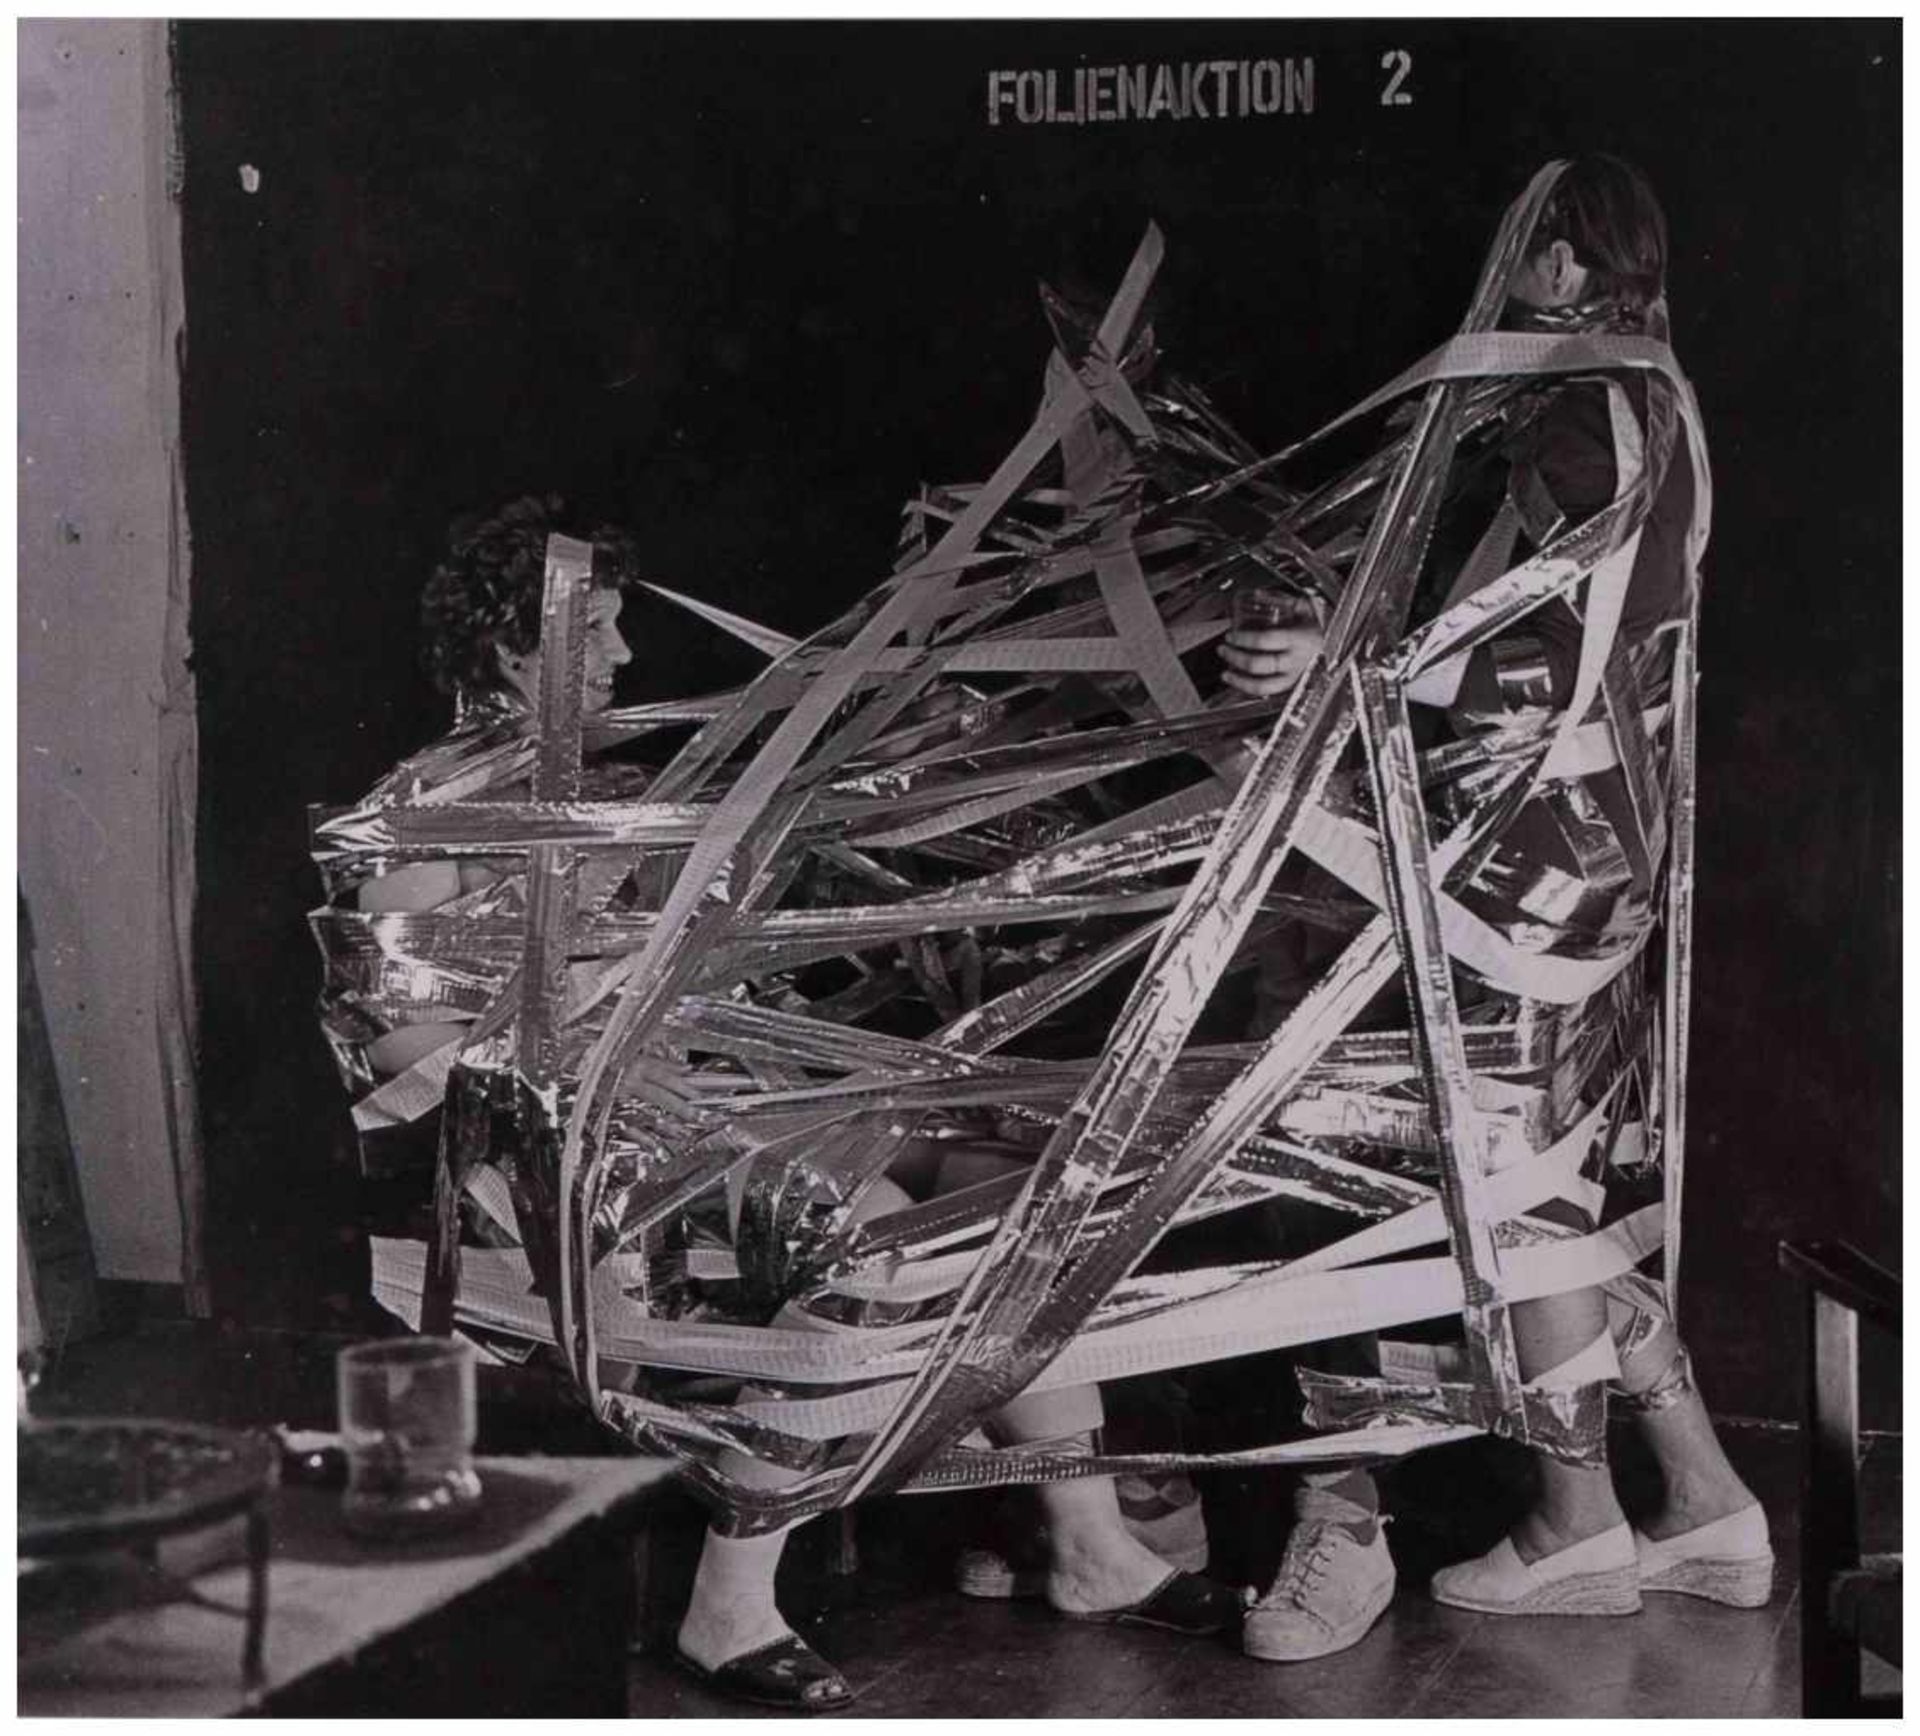 Klaus TOBER (1950-1994) - "Folienaktion 2" - Fotografie, 30,1 cm x 40,4 cm, - [...]